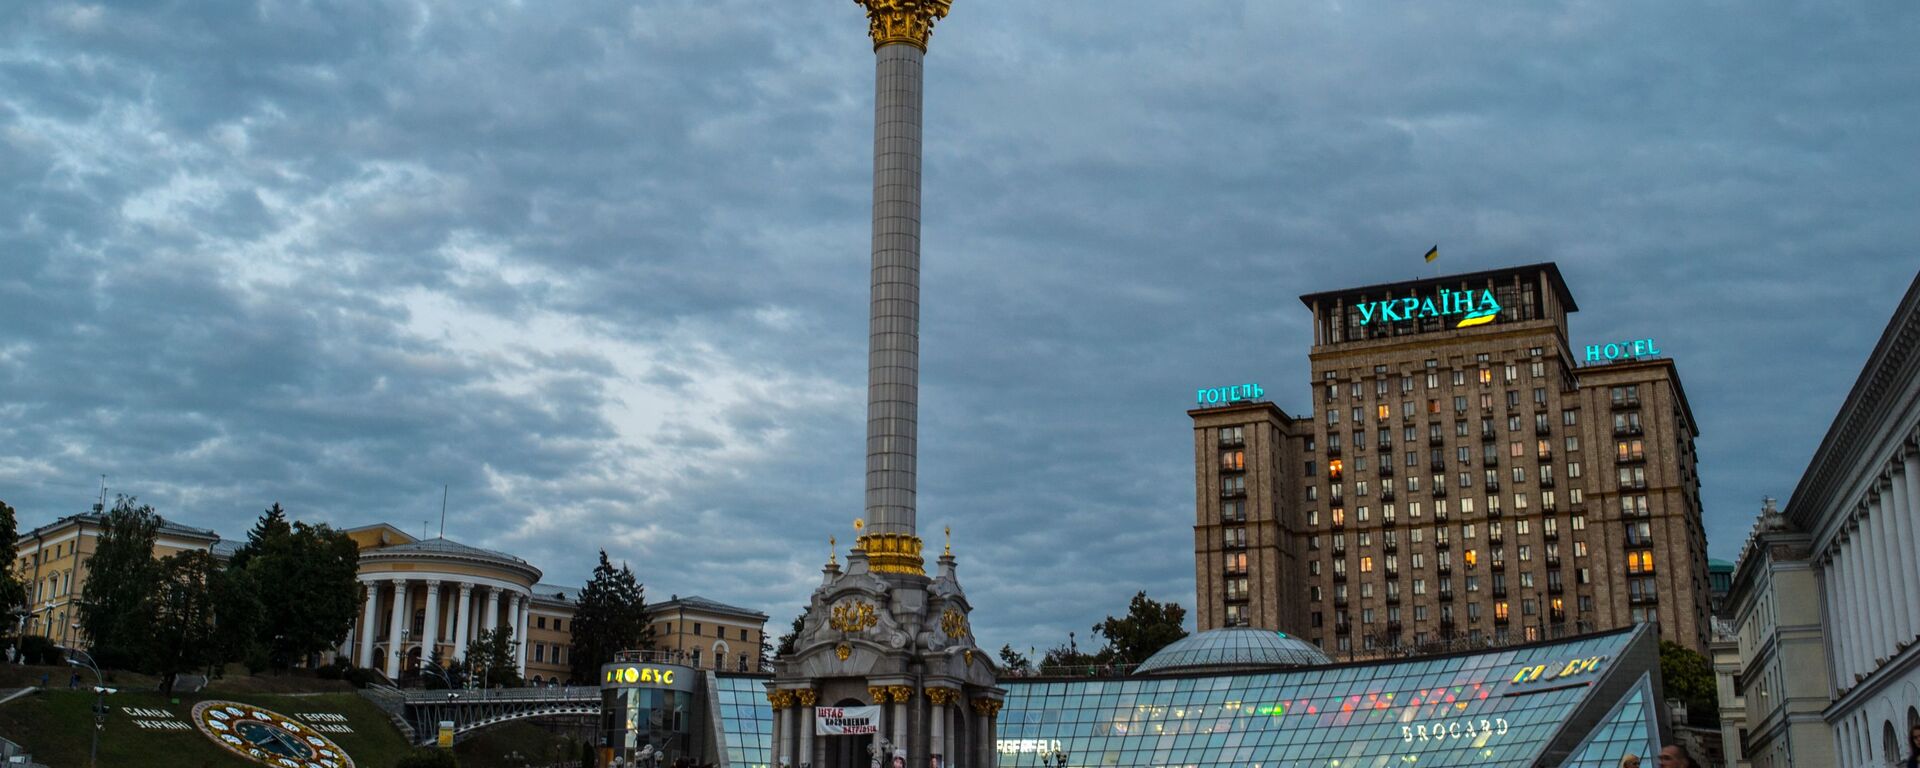 Монумент Независимости Украины в Киеве - Sputnik Таджикистан, 1920, 13.01.2021